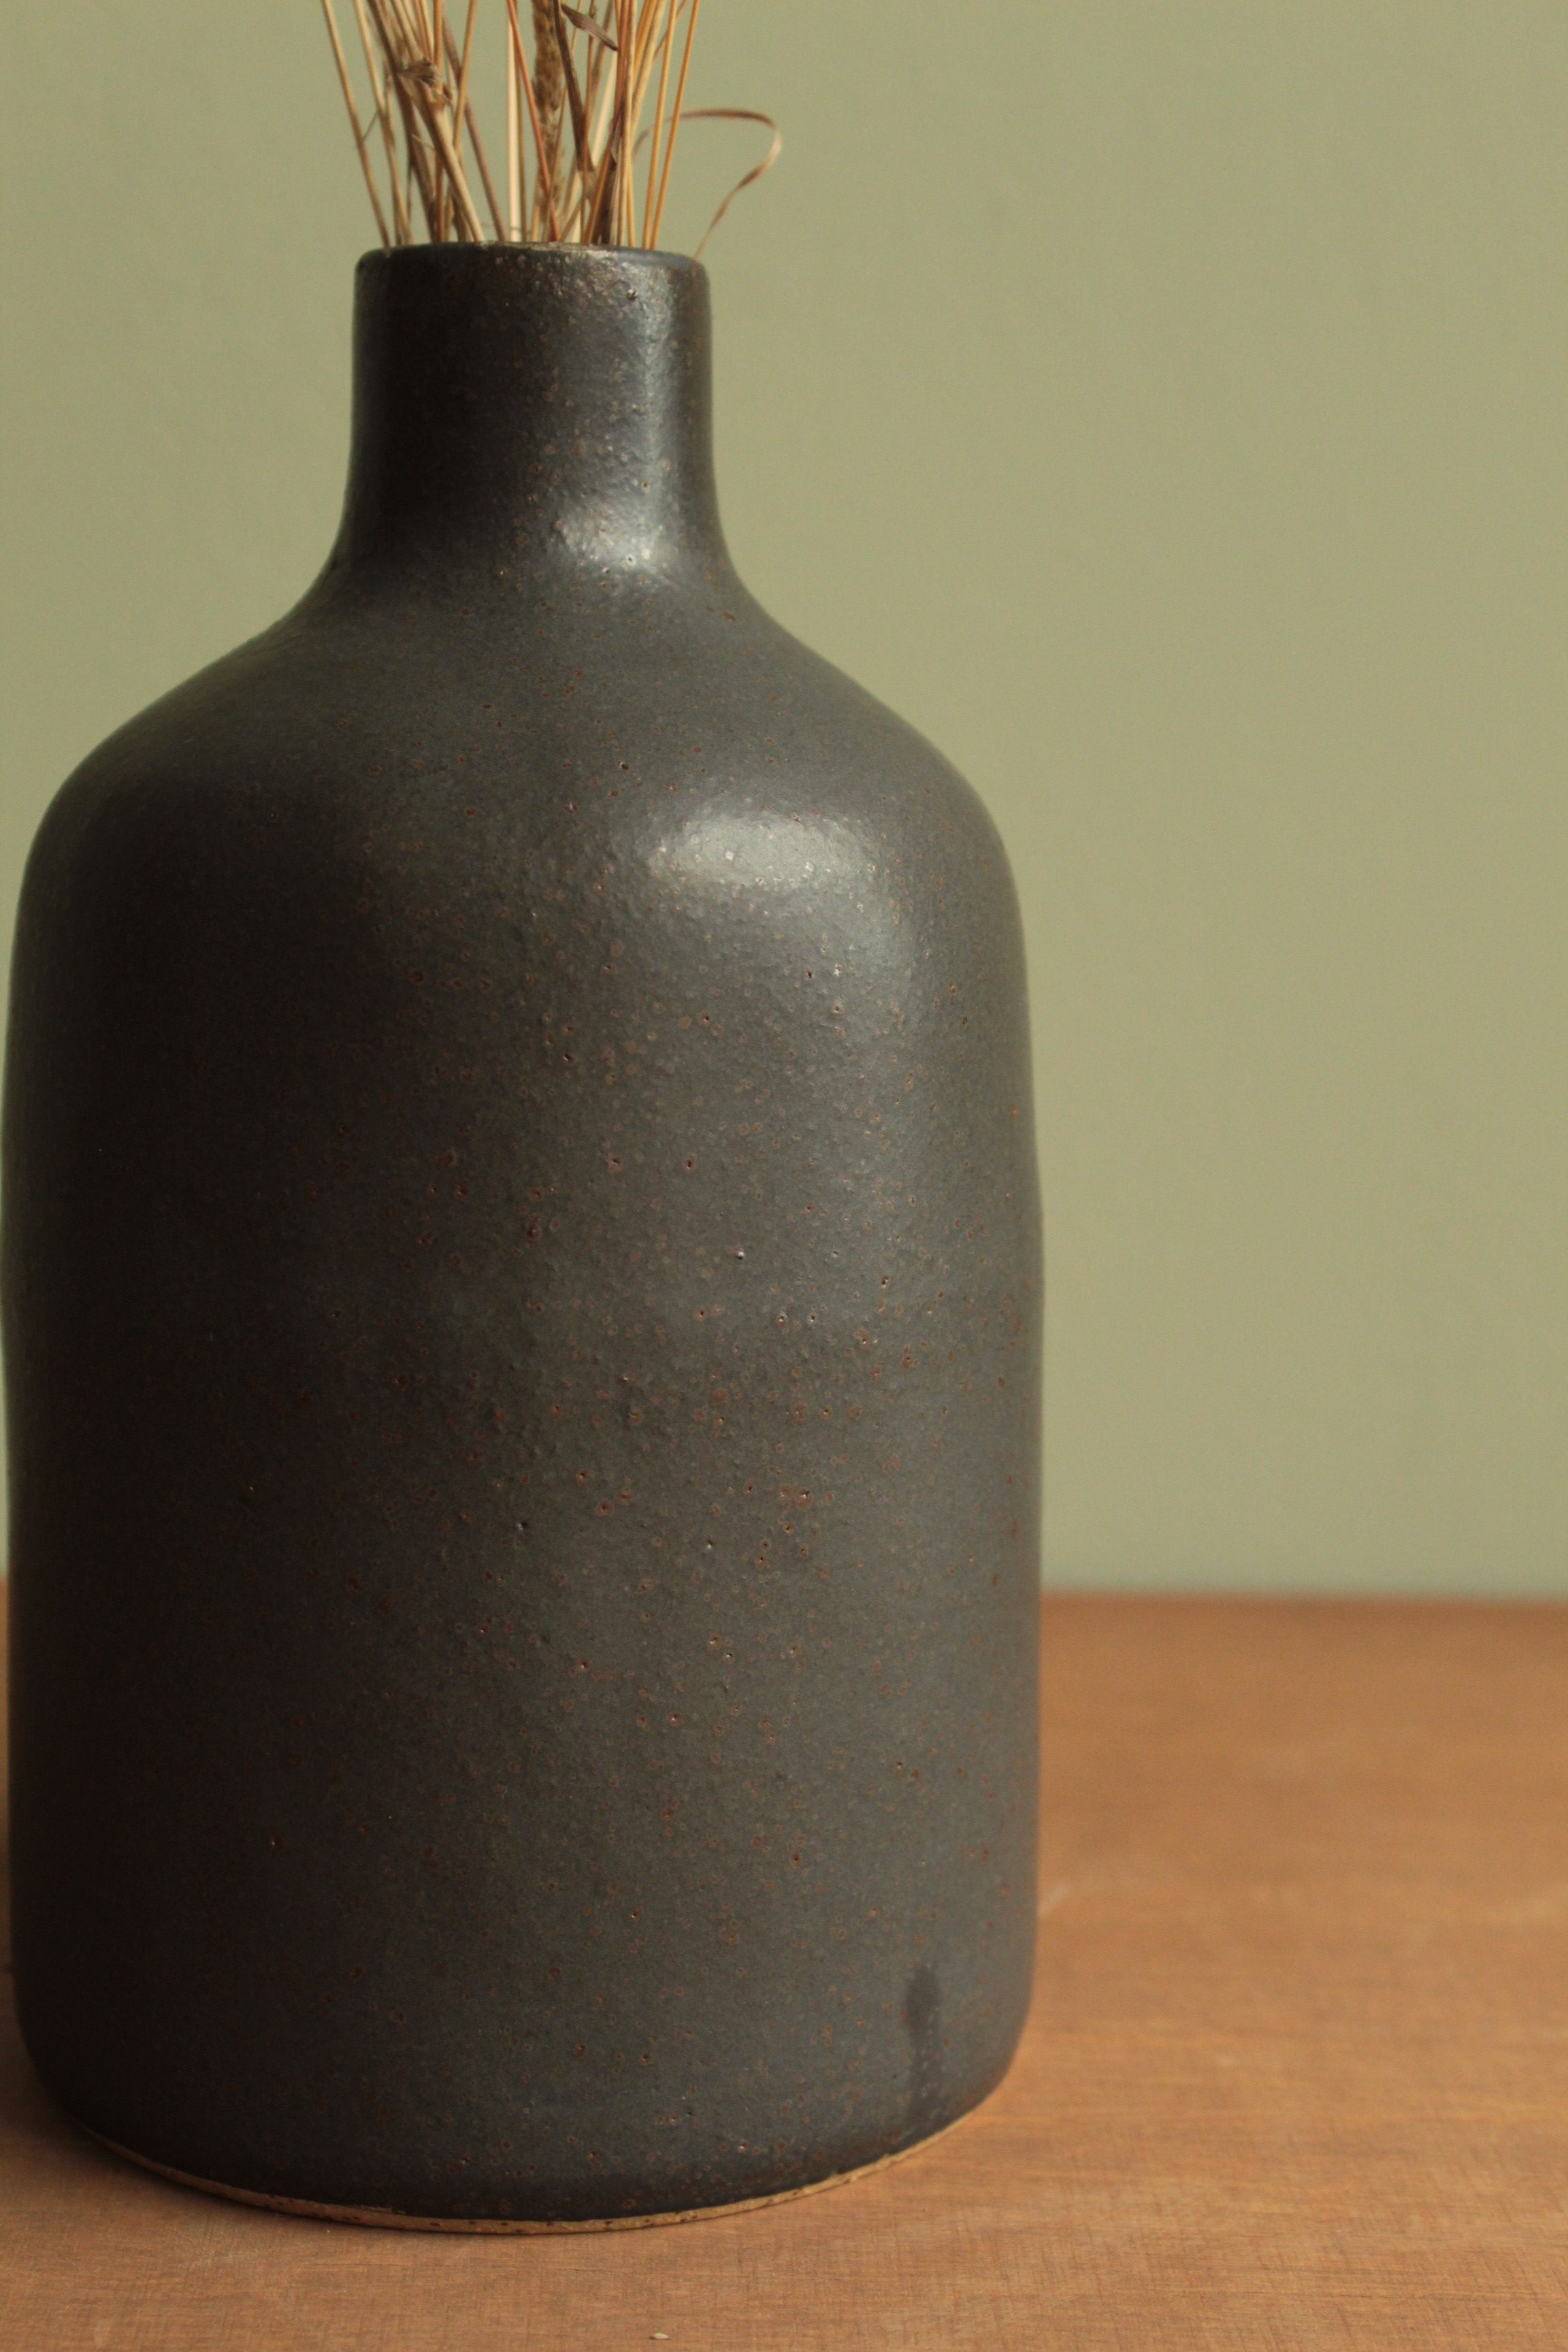 Black bottle or vase